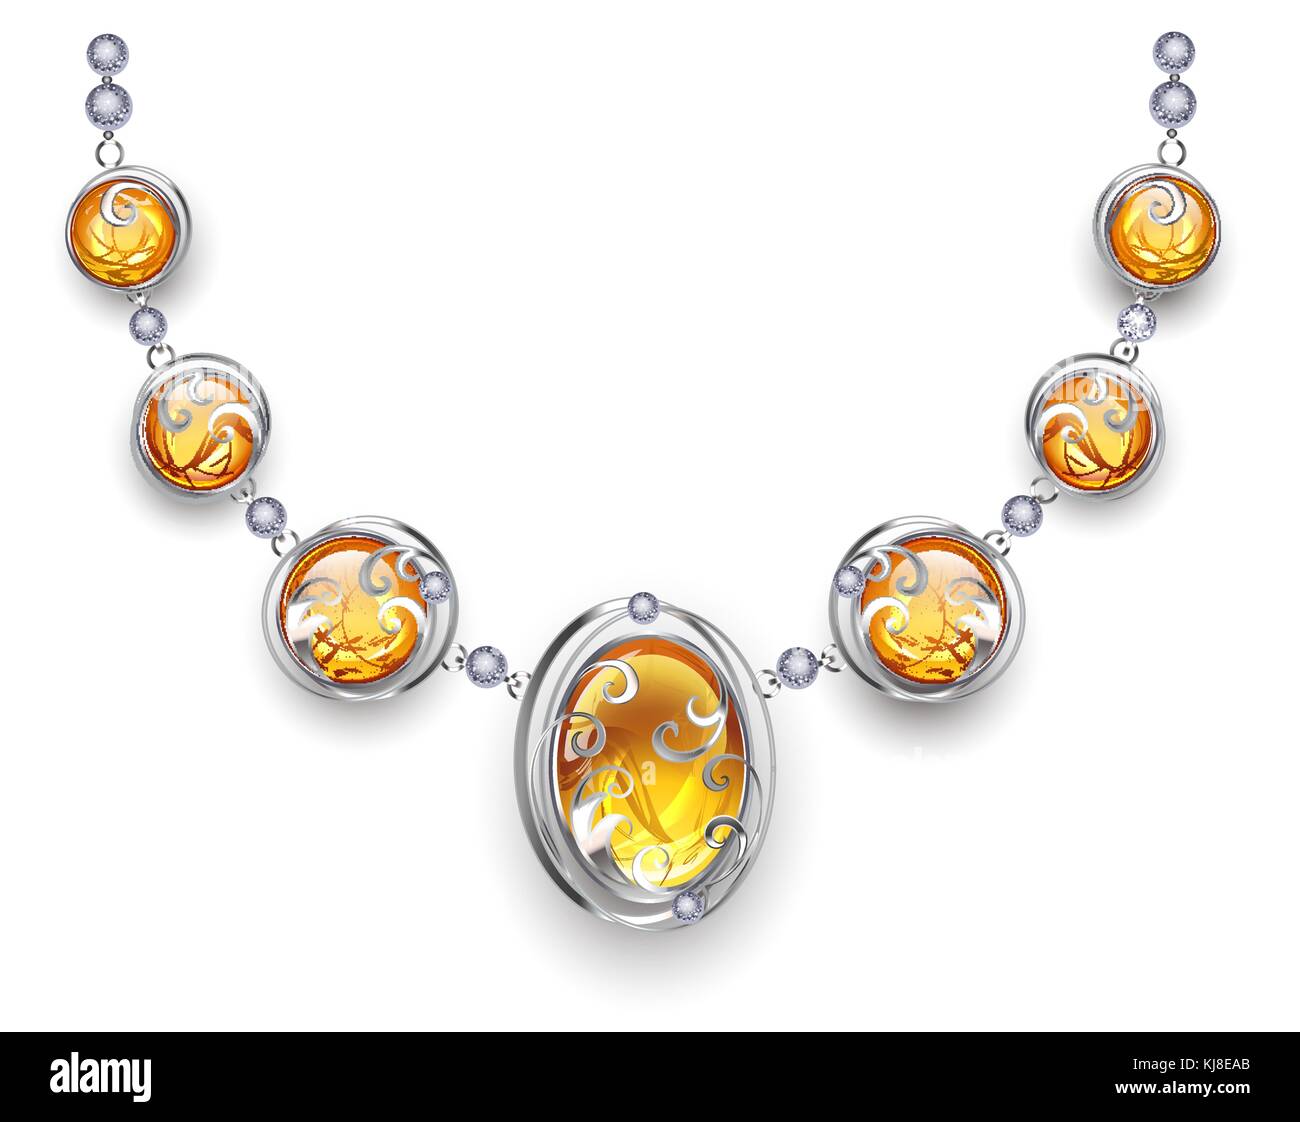 Collier en argent, élégant, décoré avec des perles en argent et ambre. conception des bijoux. collier avec Orange. Illustration de Vecteur